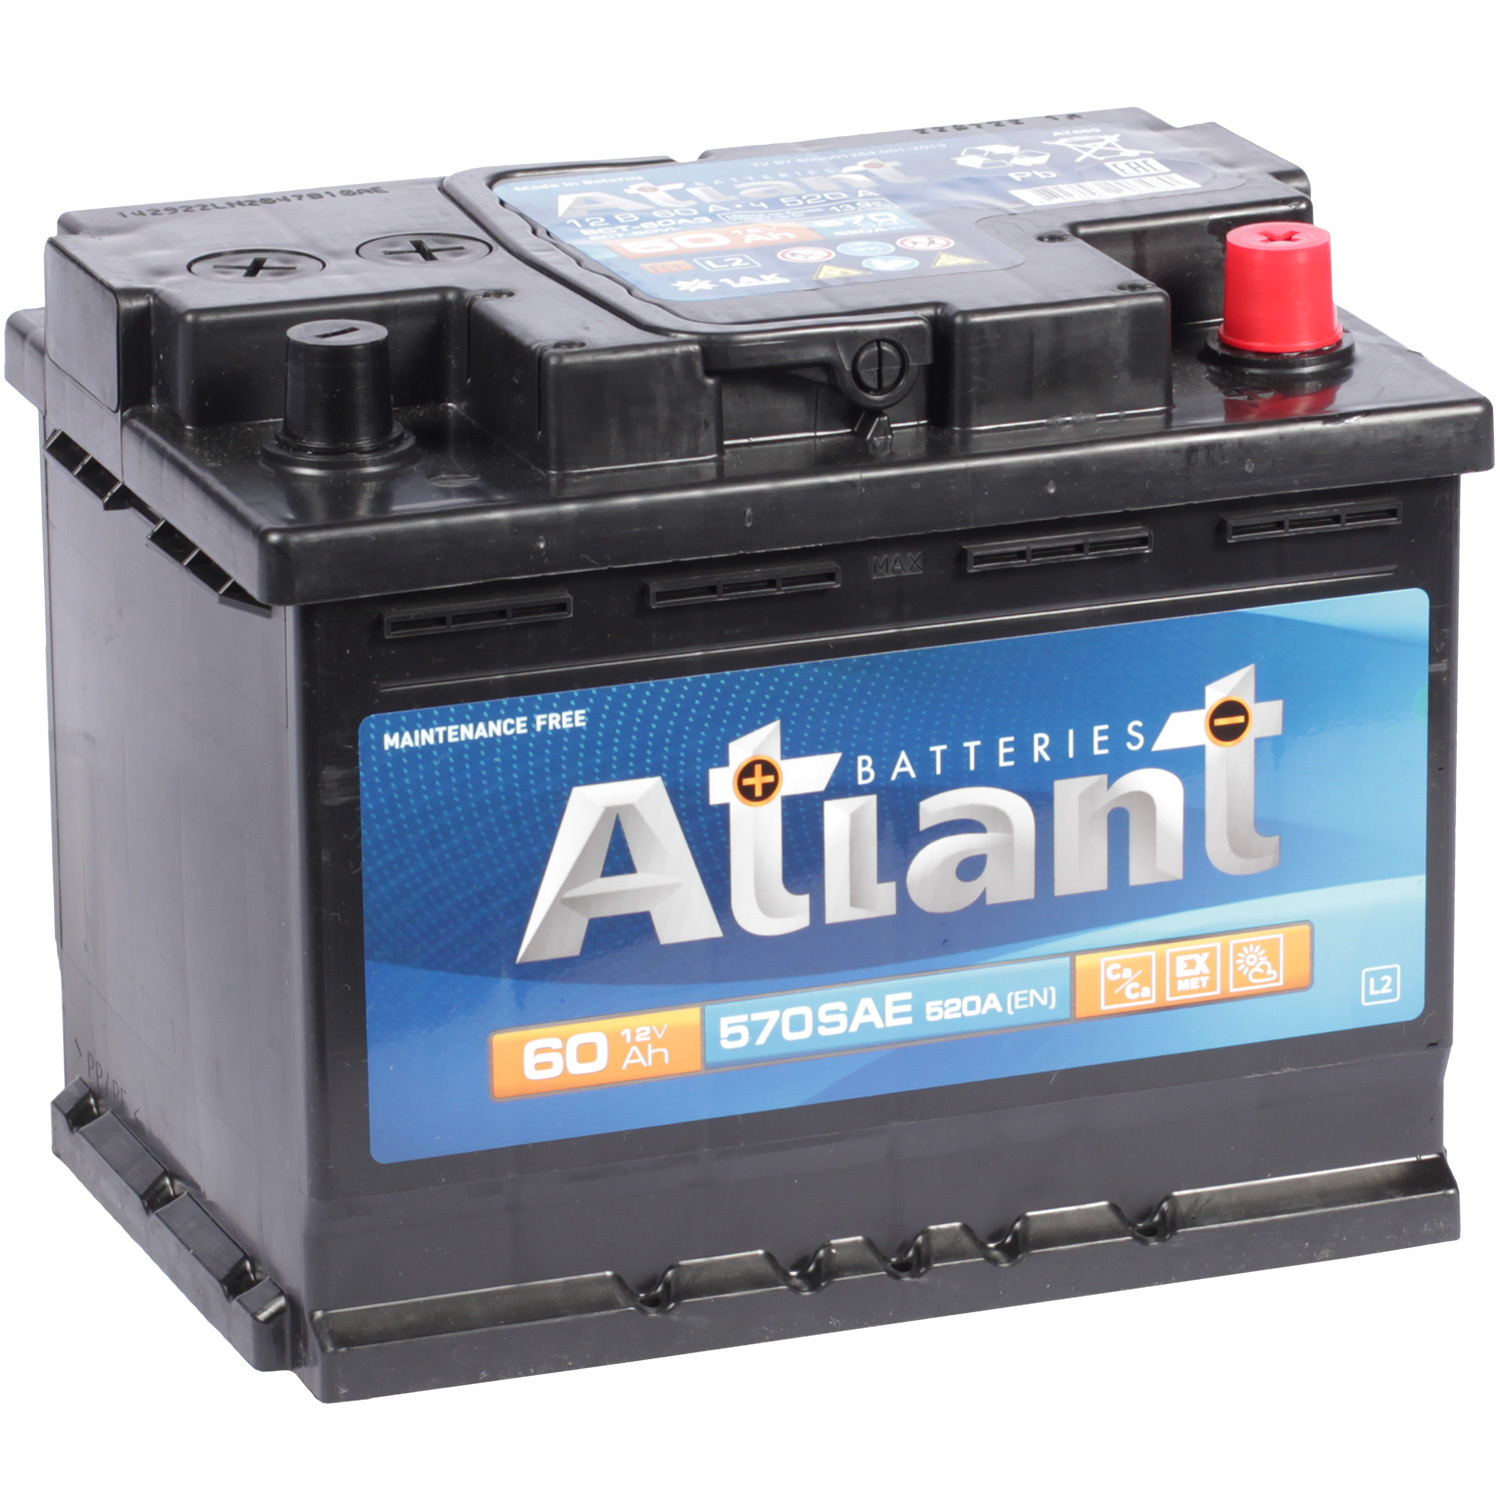 Atlant Автомобильный аккумулятор Atlant 60 Ач обратная полярность L2 dominator автомобильный аккумулятор dominator 60 ач обратная полярность l2